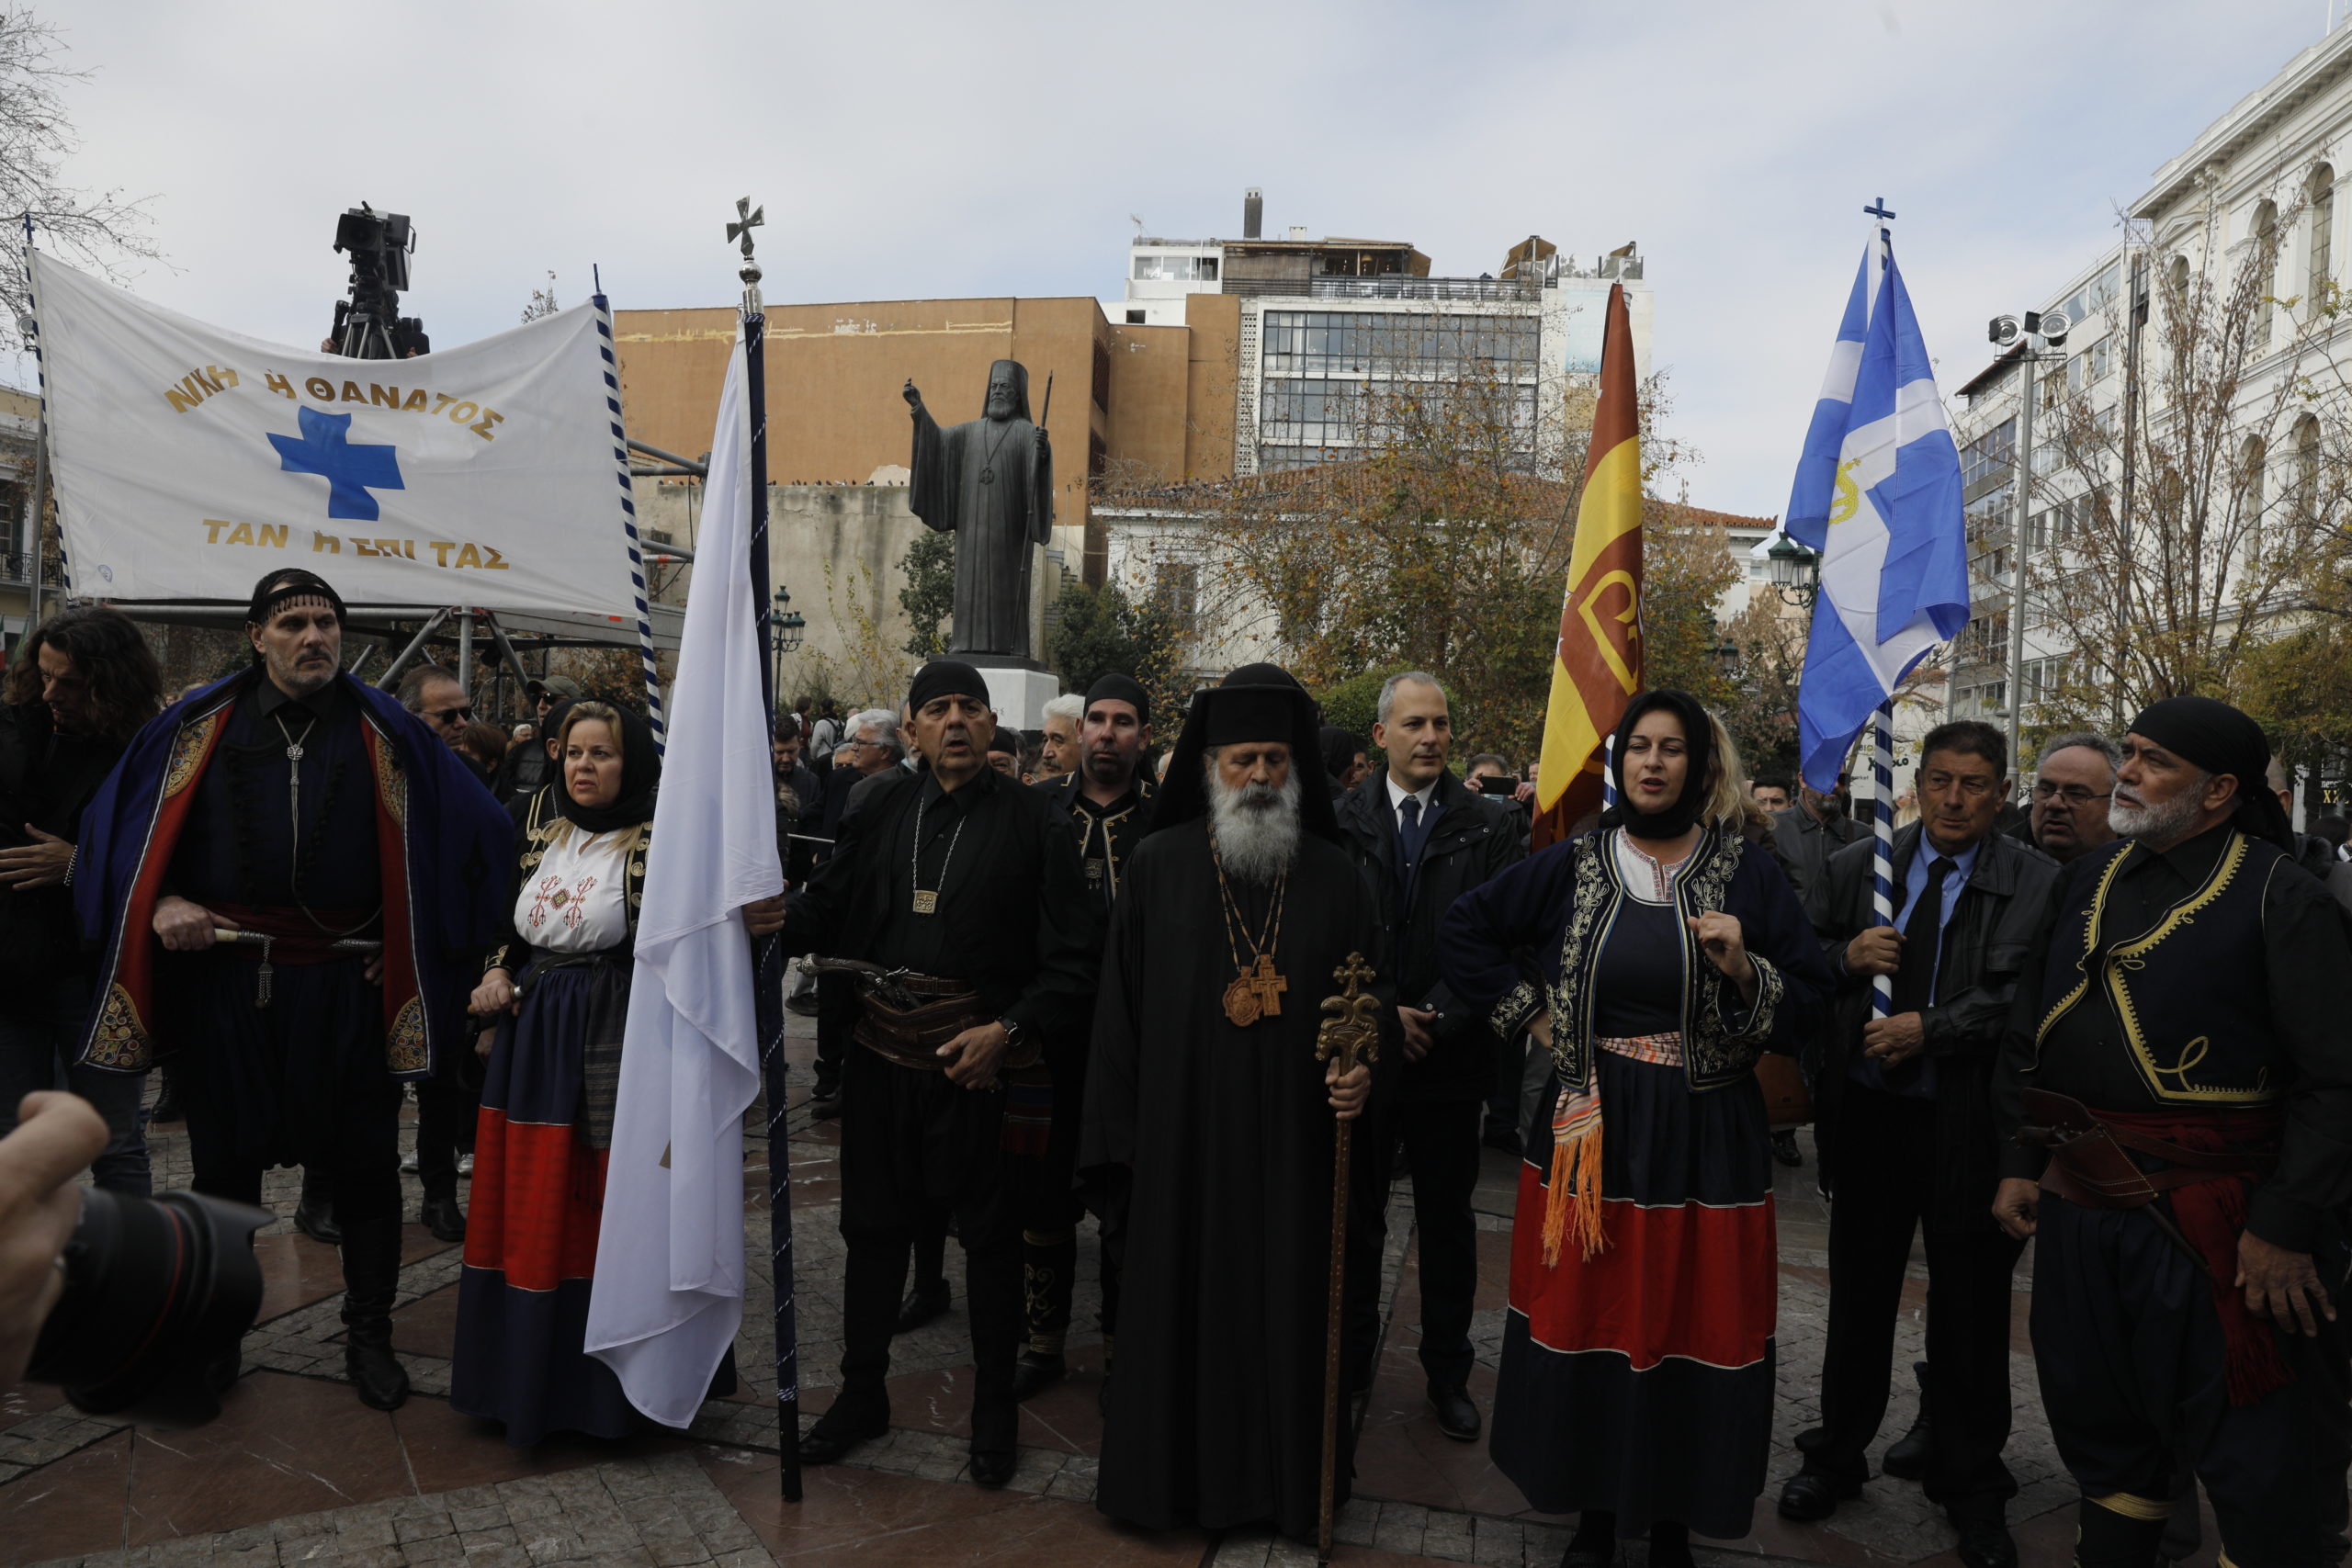 Κηδεία τέως βασιλιά: Ουρές πολιτών στη Μητρόπολη – Ακόμα και με παραδοσιακές στολές το τελευταίο αντίο (εικόνες)